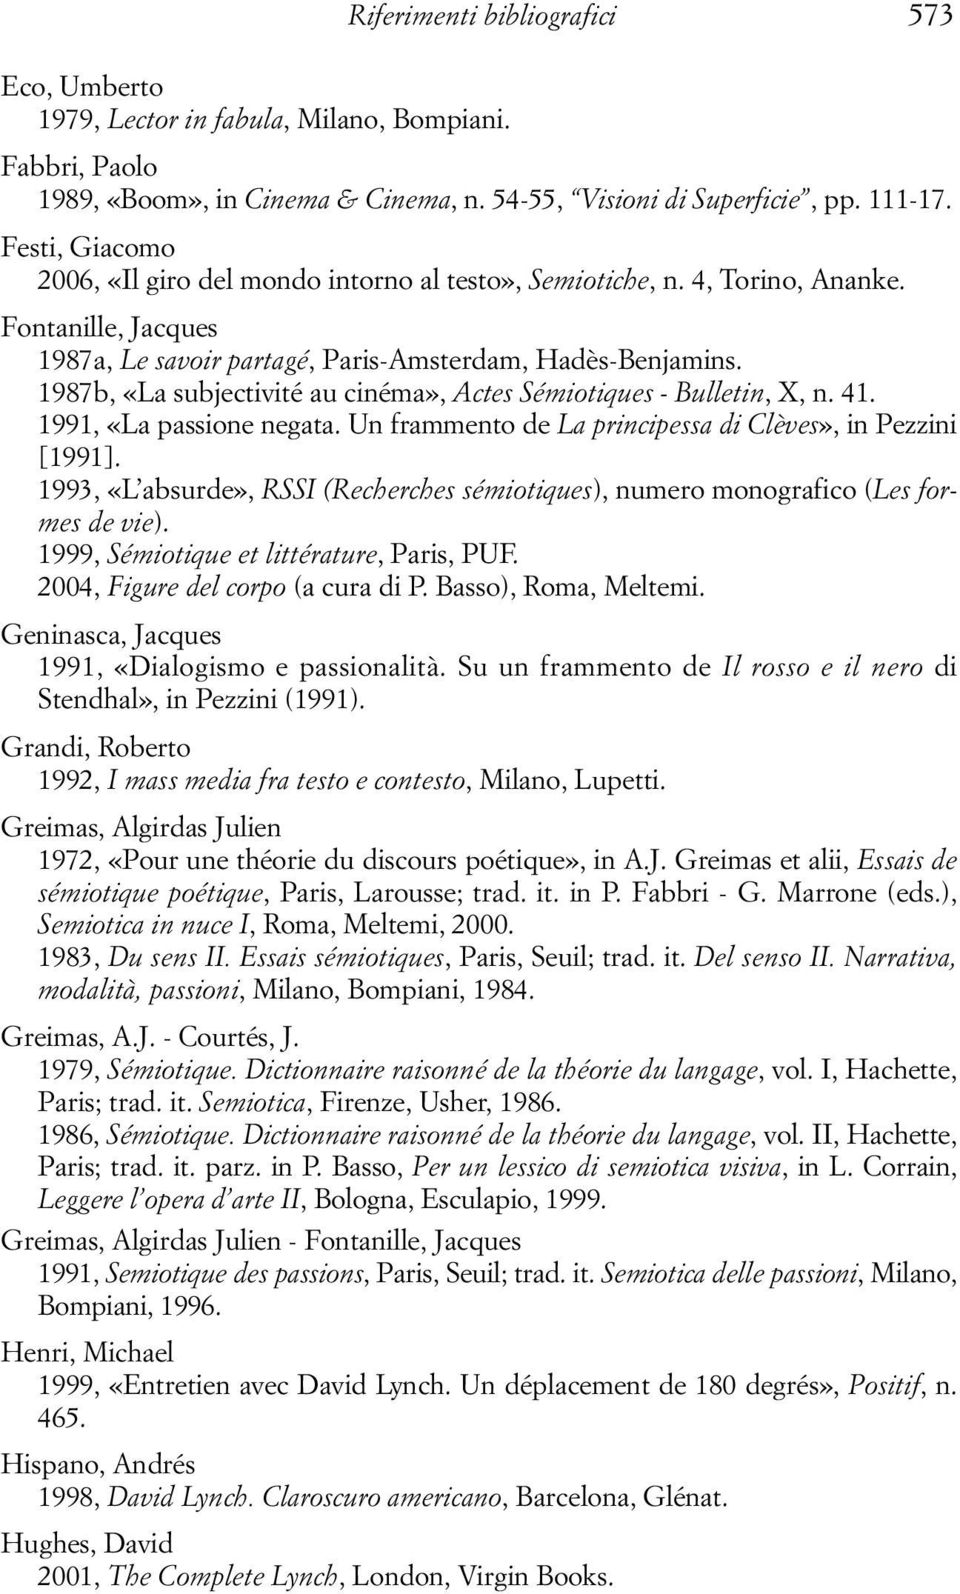 1987b, «La subjectivité au cinéma», Actes Sémiotiques - Bulletin, X, n. 41. 1991, «La passione negata. Un frammento de La principessa di Clèves», in Pezzini [1991].